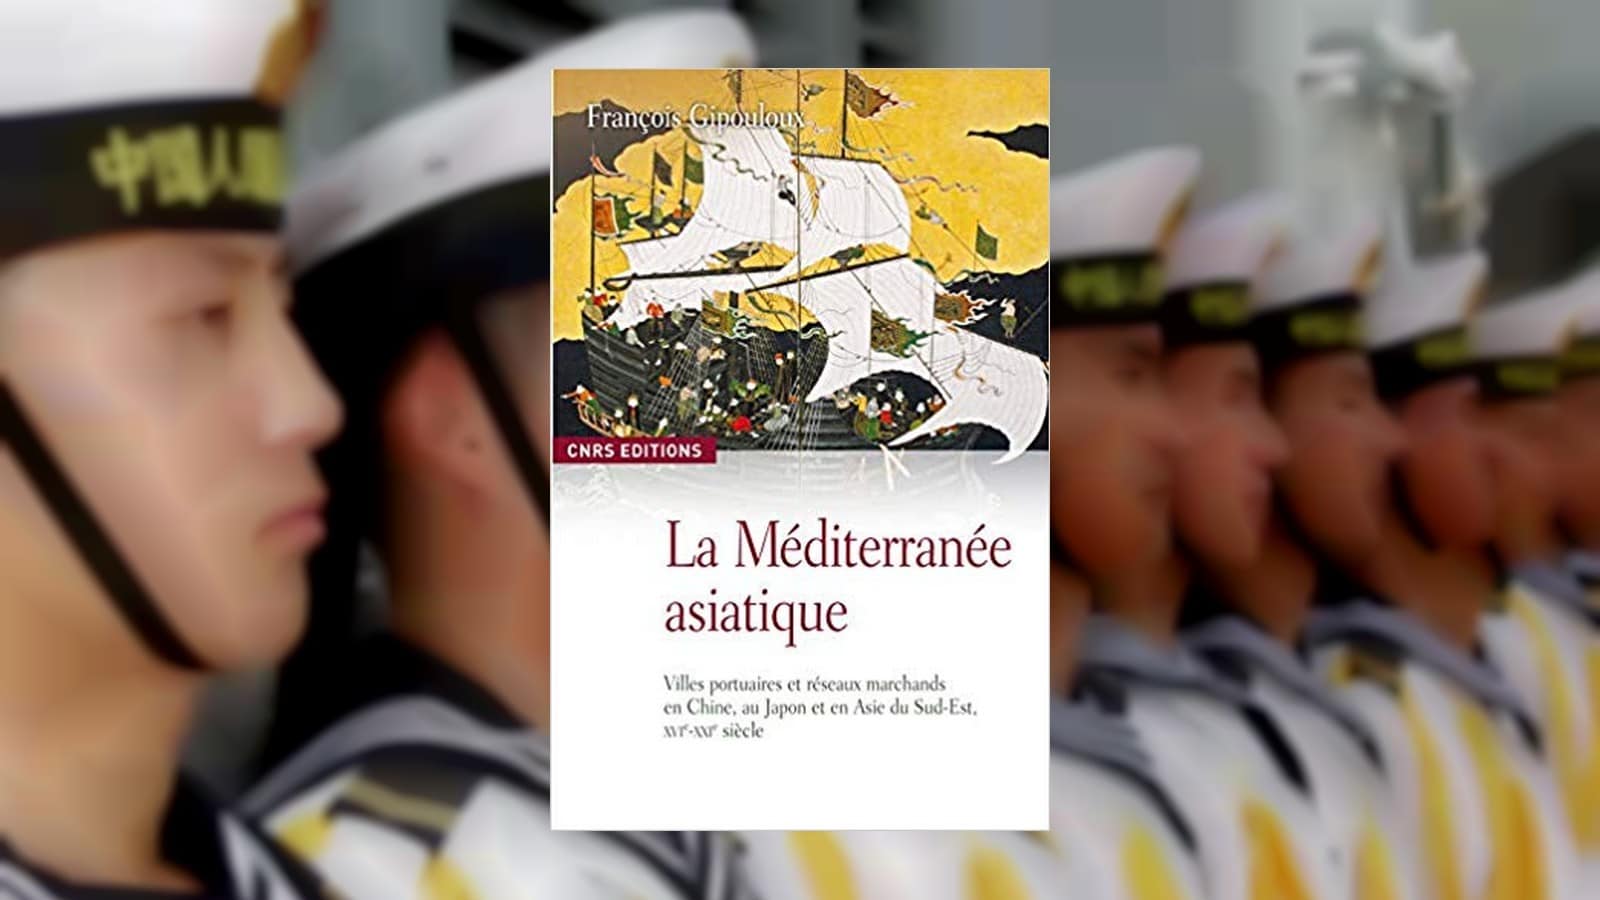 La Méditerranée asiatique XVIe – XXIe siècle, François Gipouloux, CNRS éditions Biblis, 2019, 480 pages.